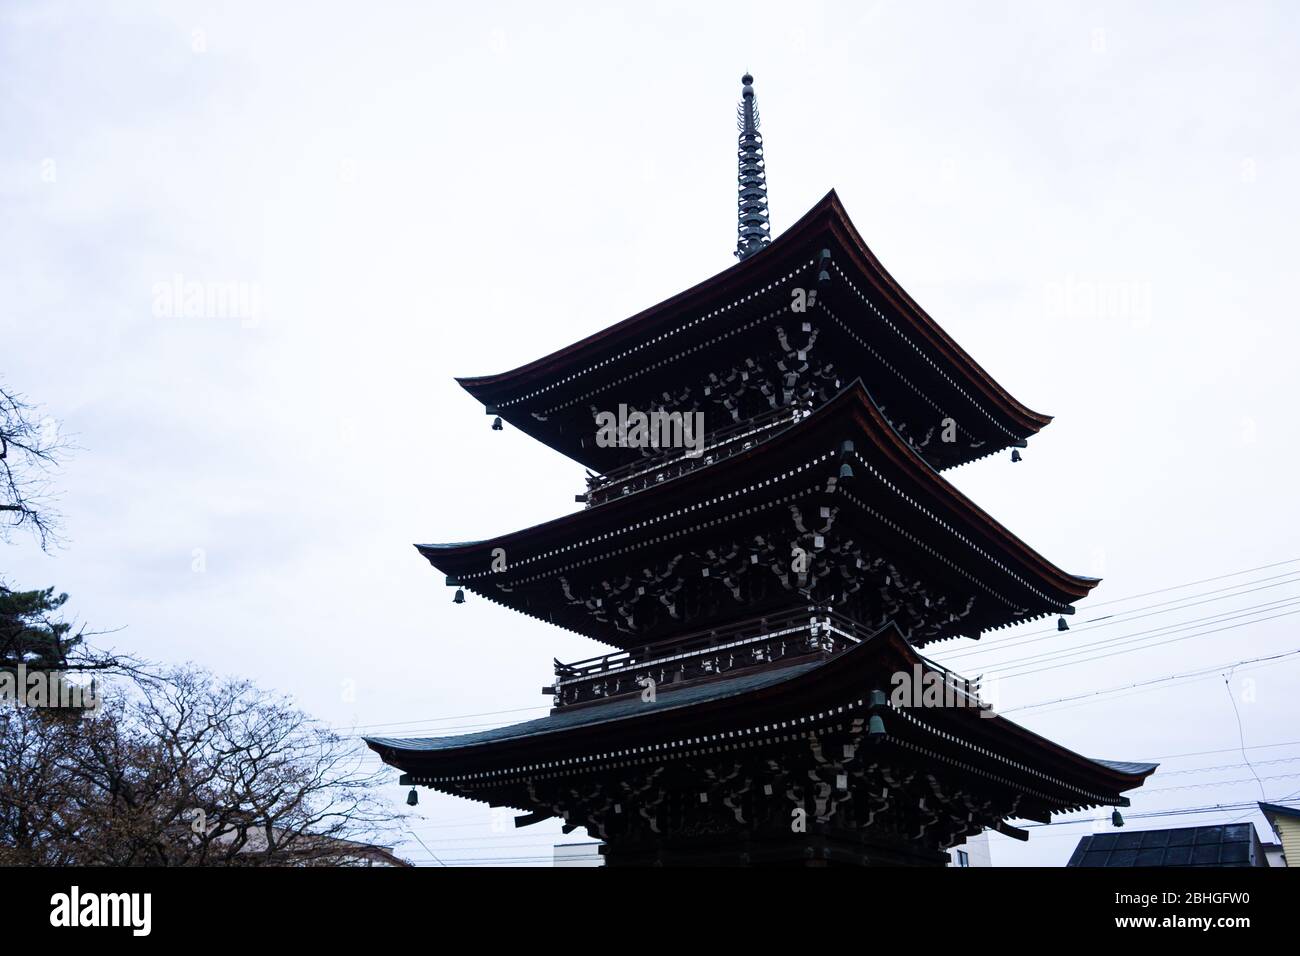 El templo Hida Kokubunji fue construido en 746, más de 1200 años, igual que el enorme árbol de ginko que hay detrás. El edificio es la estructura más antigua. Foto de stock